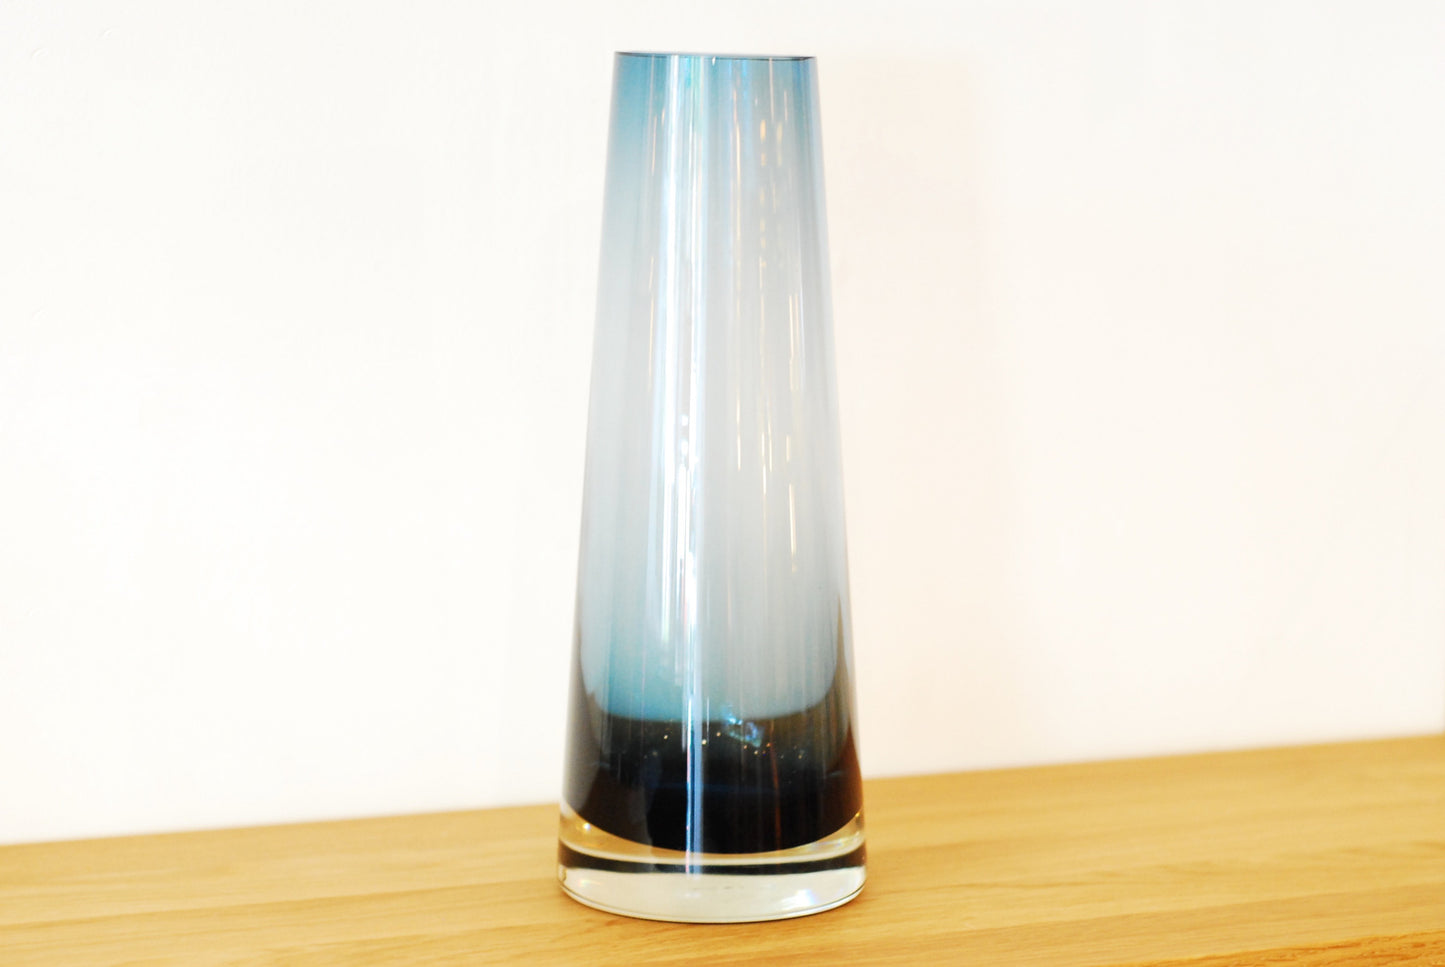 Large glass vase